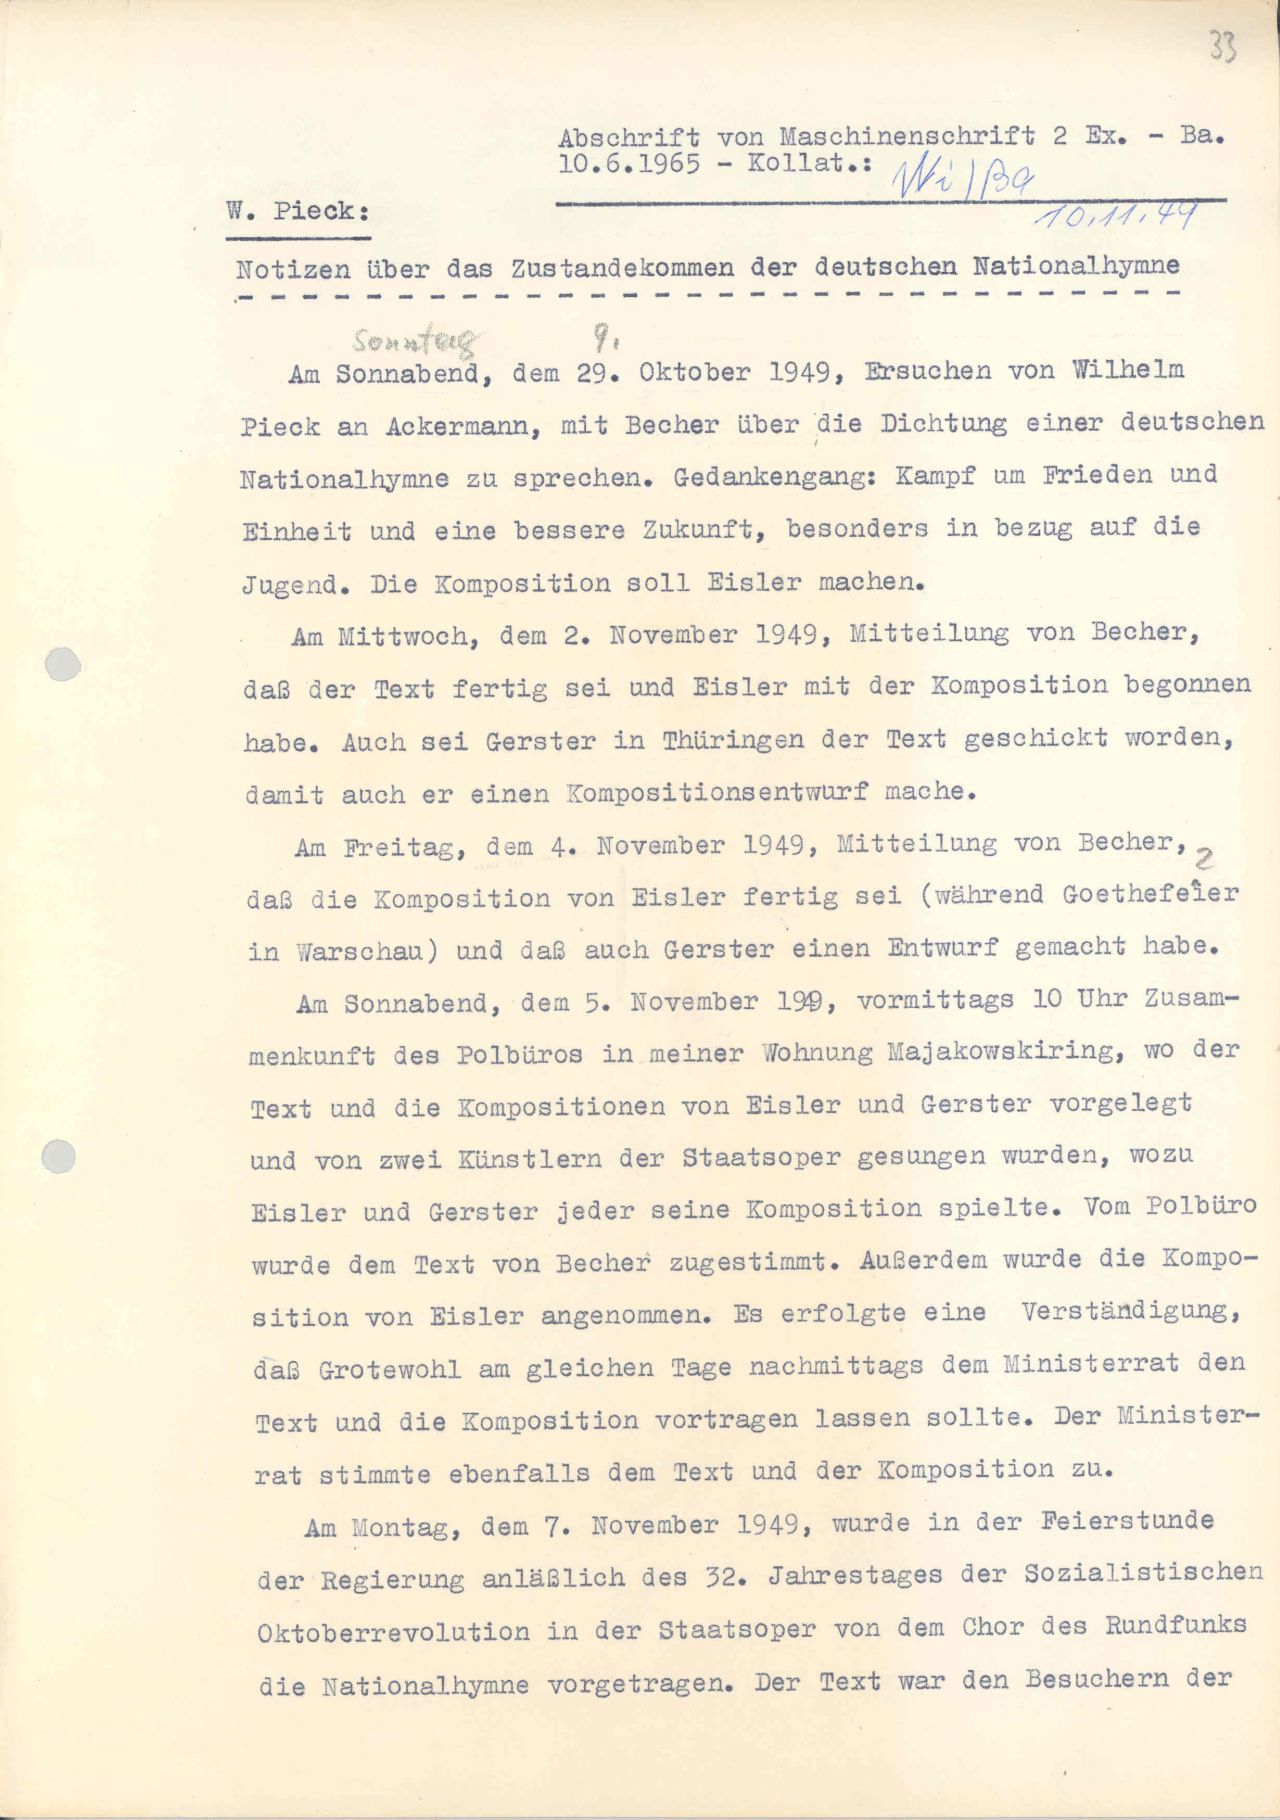 Der Präsident der DDR, Wilhelm Pieck, schildert in seinen Notizen das Zustandekommen der DDR-Nationalhymne